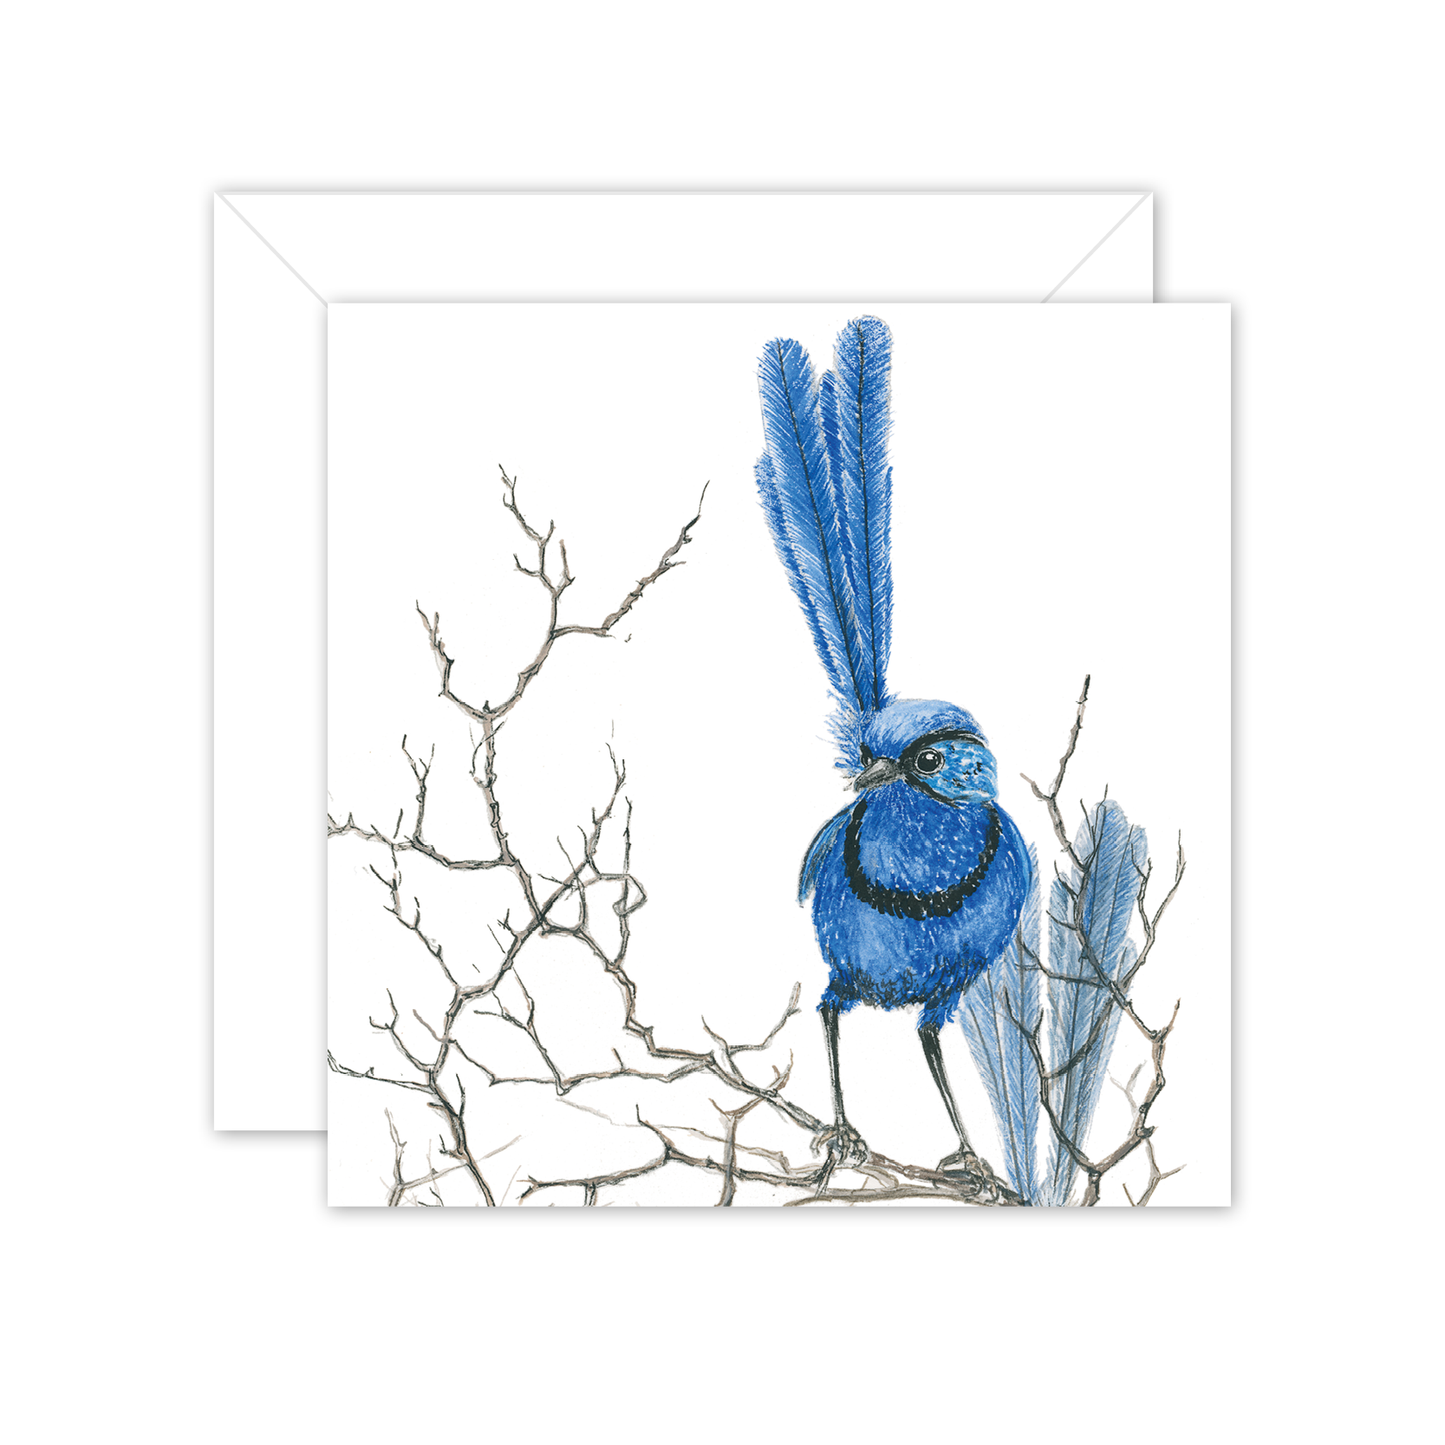 Square Card: Splendid fairy wren on branch